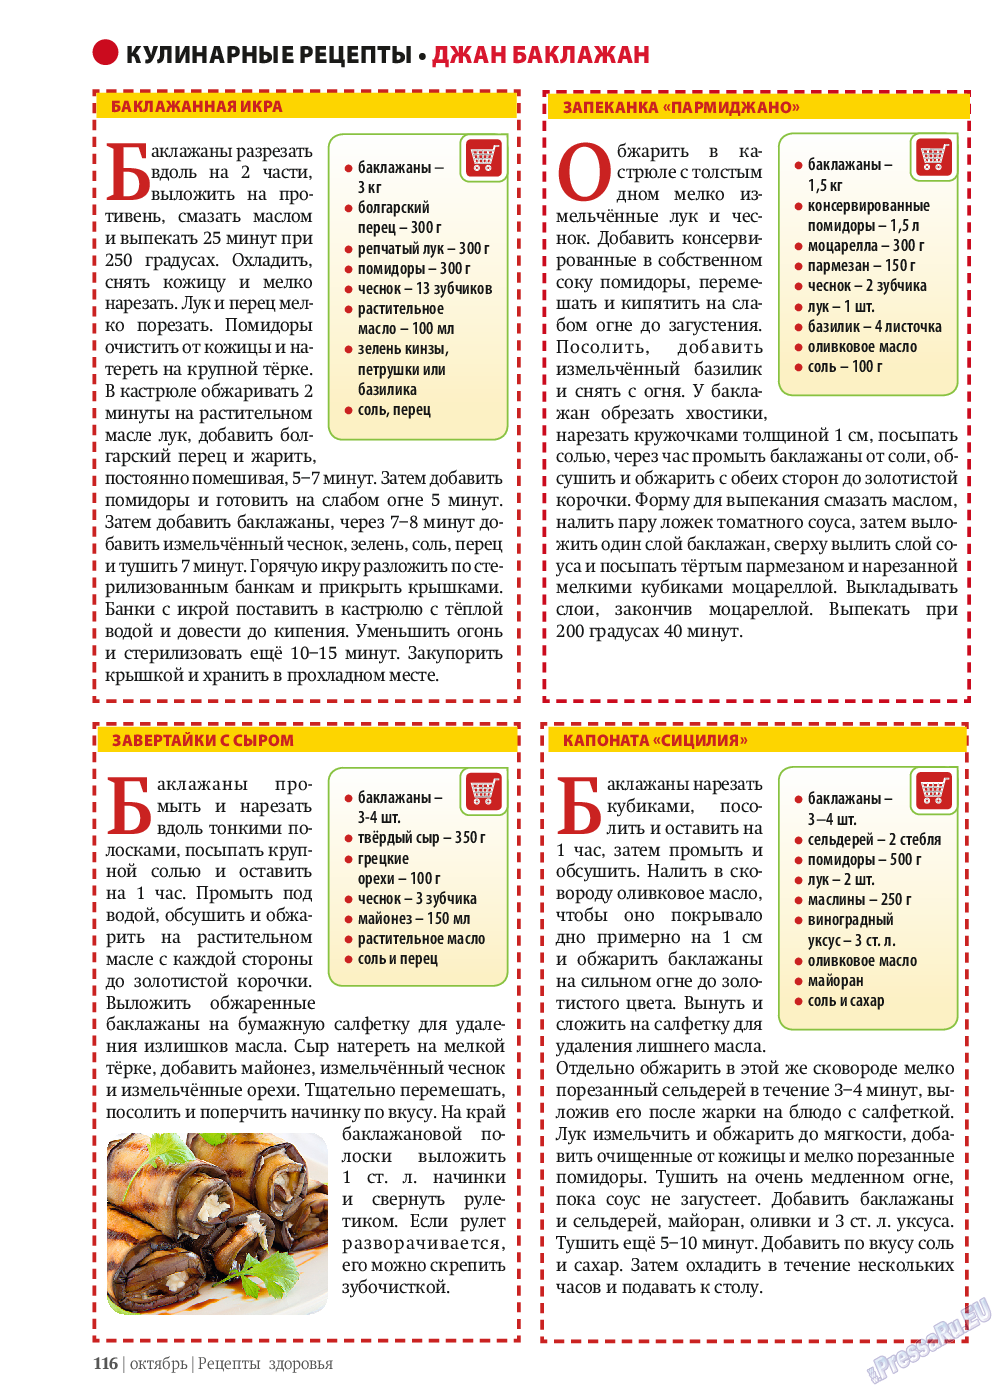 Рецепты здоровья, журнал. 2013 №10 стр.116